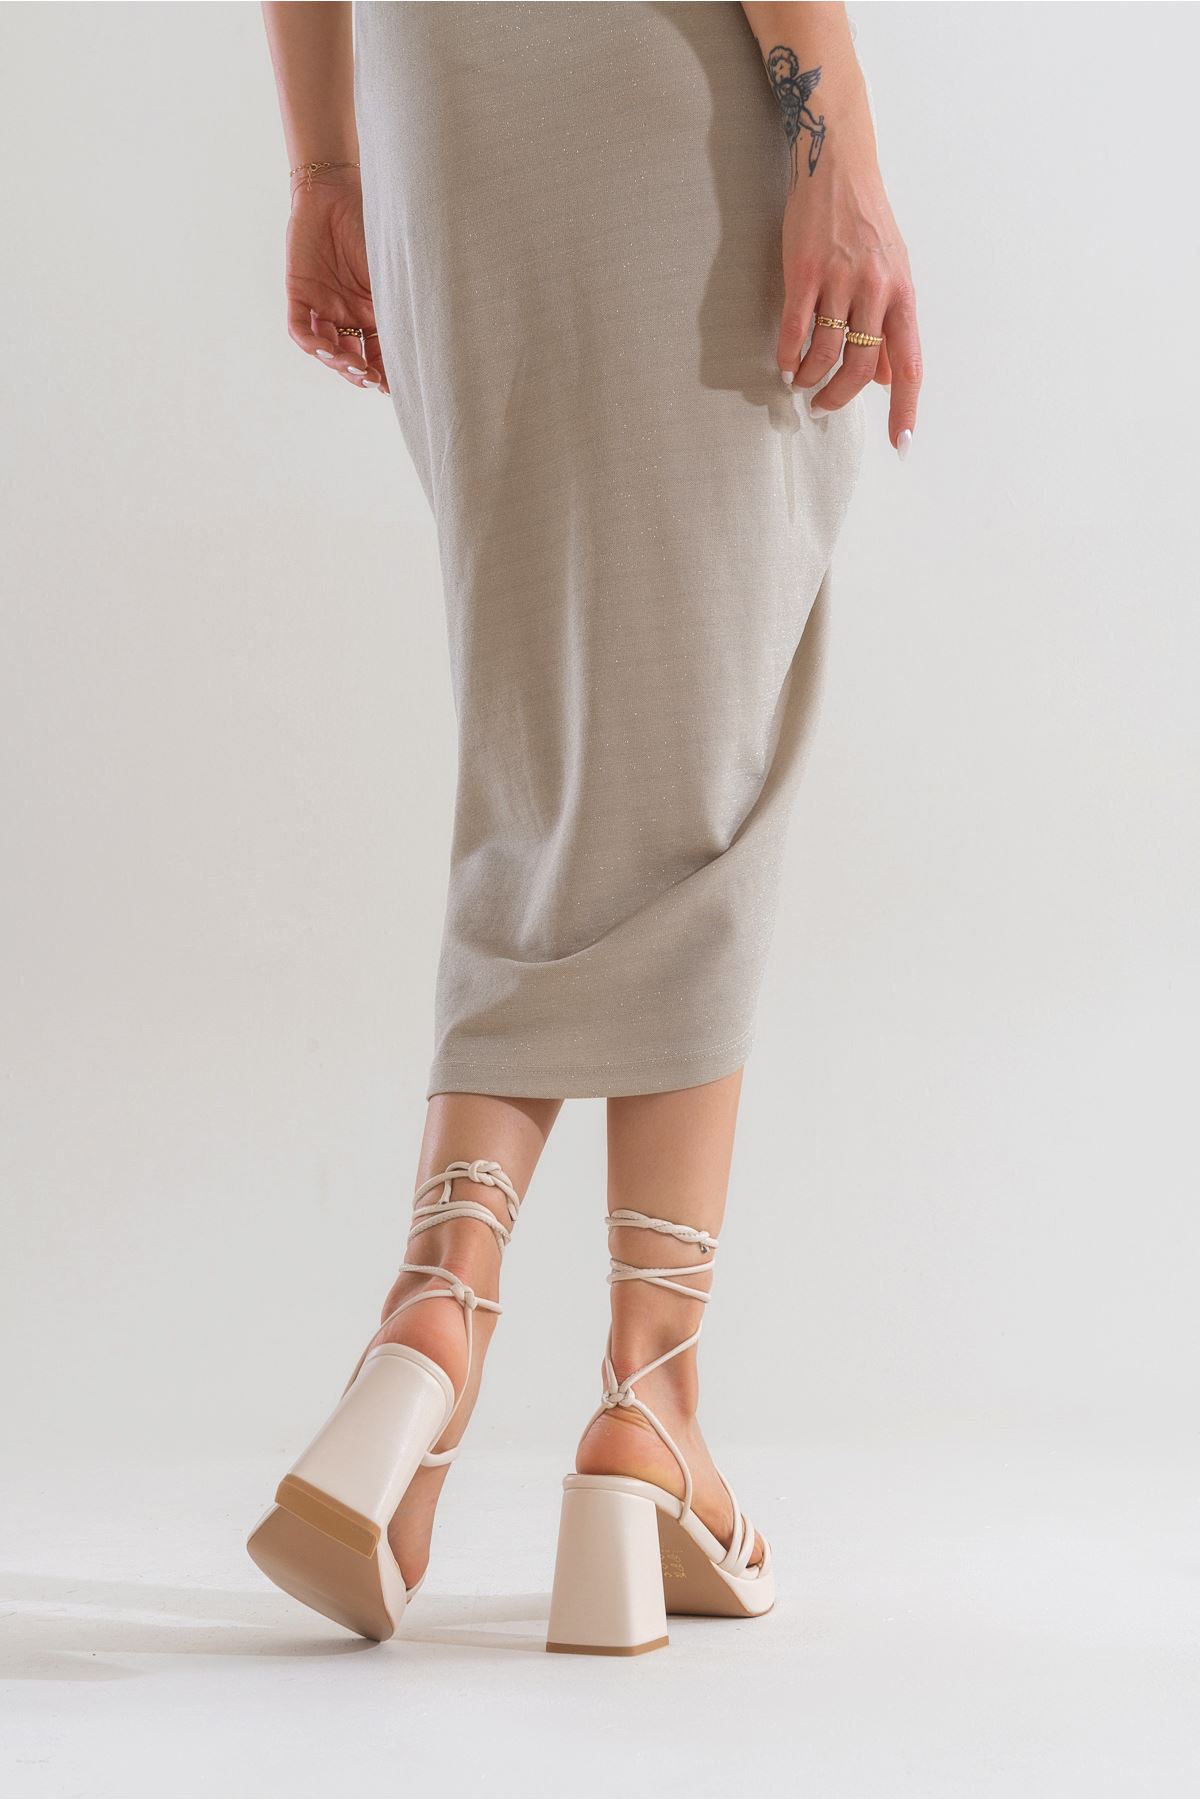 Kadın Bantlı ve İpli Platform Topuklu Kadın Sandalet Carisa Platform Gate Shoes-Fildişi